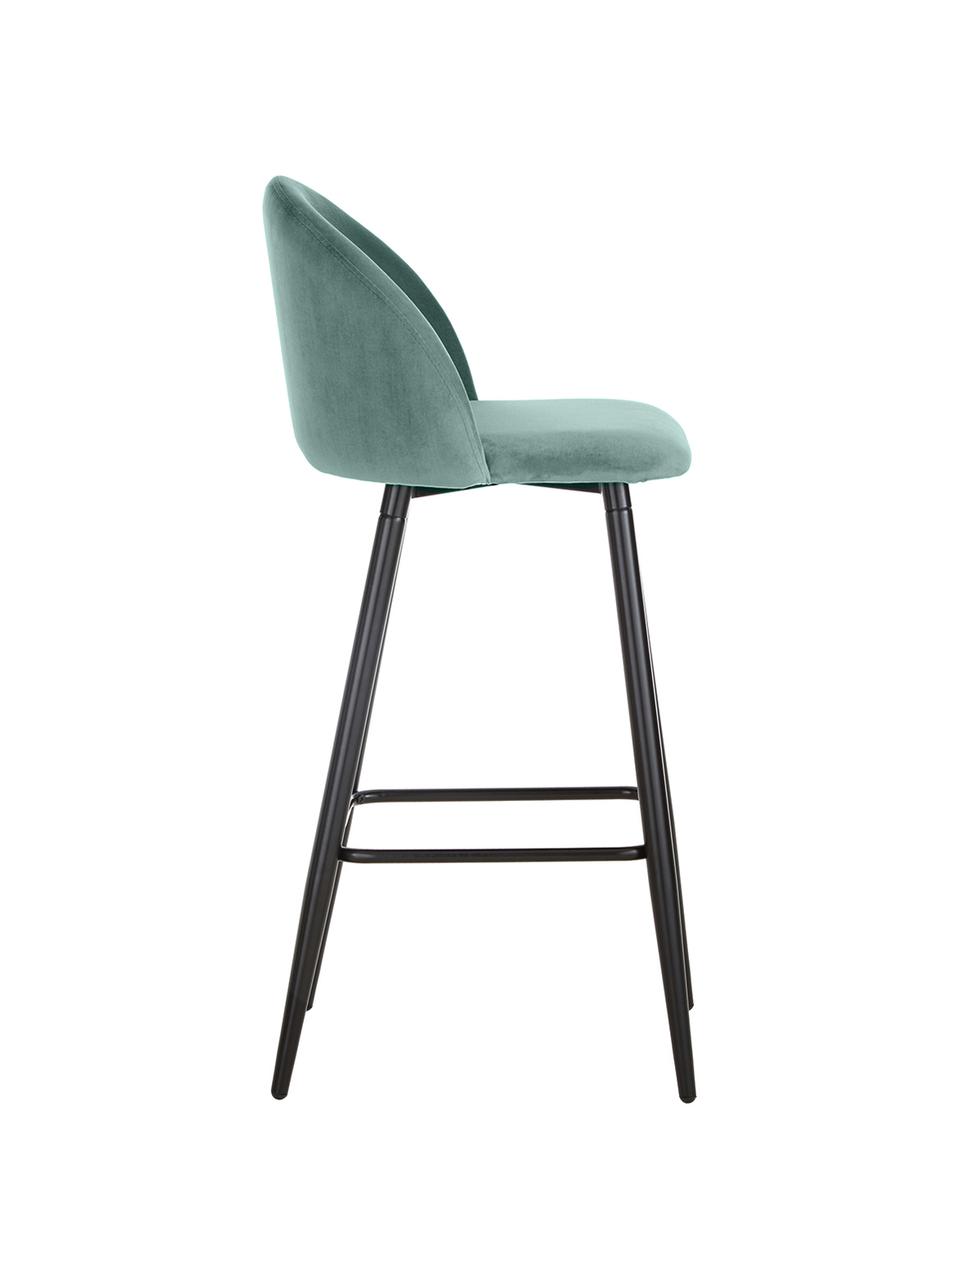 Chaise haute de bar Amy, Velours turquoise, larg. 45 x haut. 103 cm